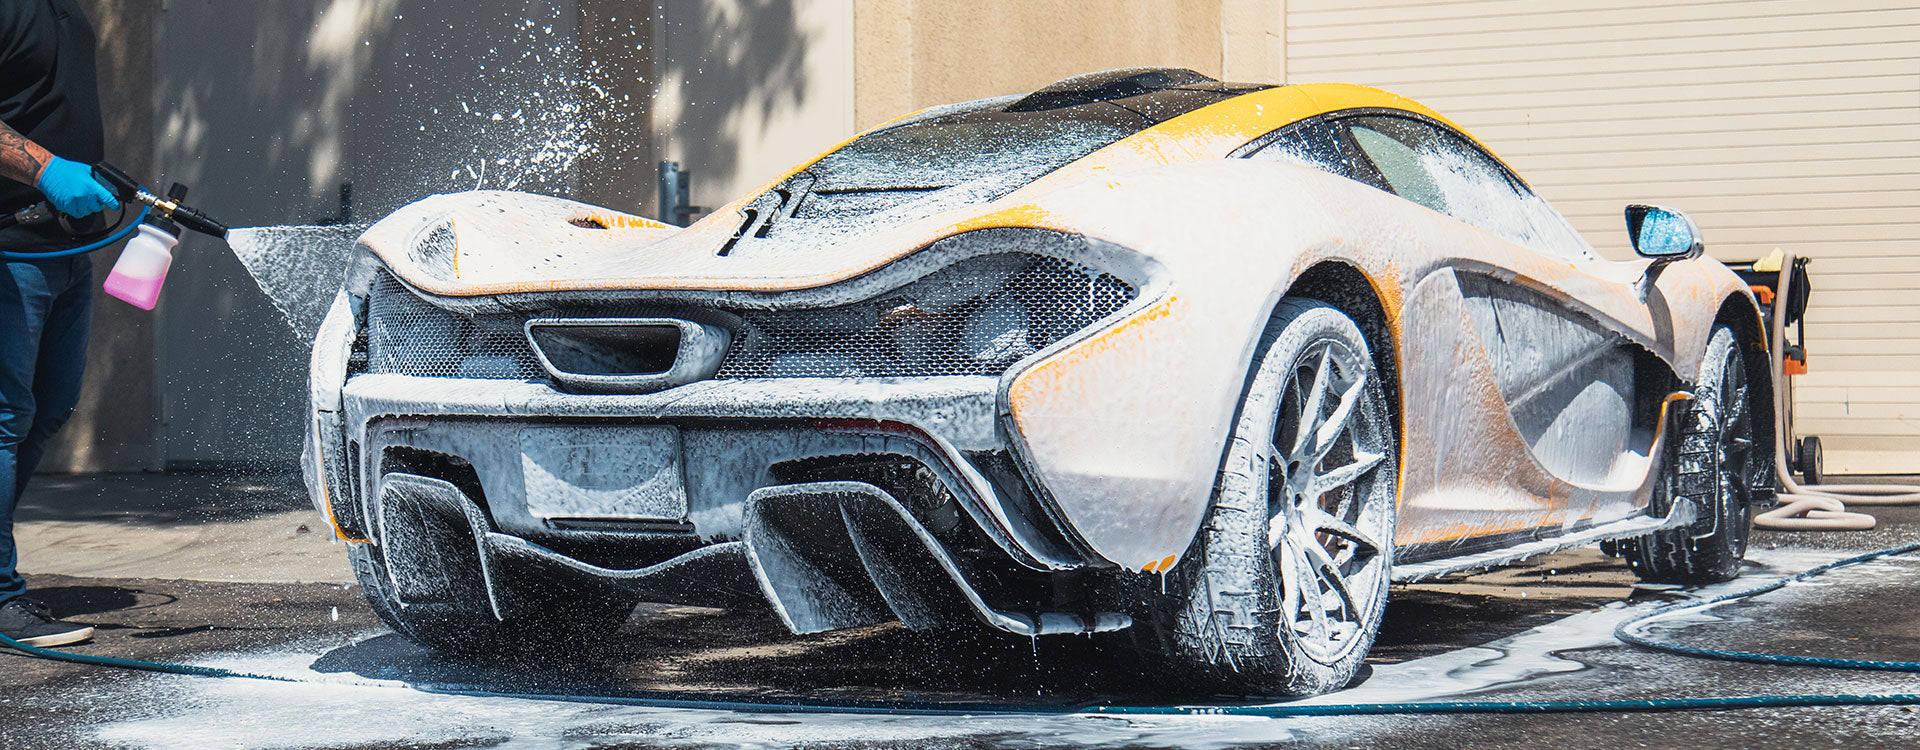 Wash & Wax Car Wash Shampoo from Jay Leno's Garage | Foam McLaren P1